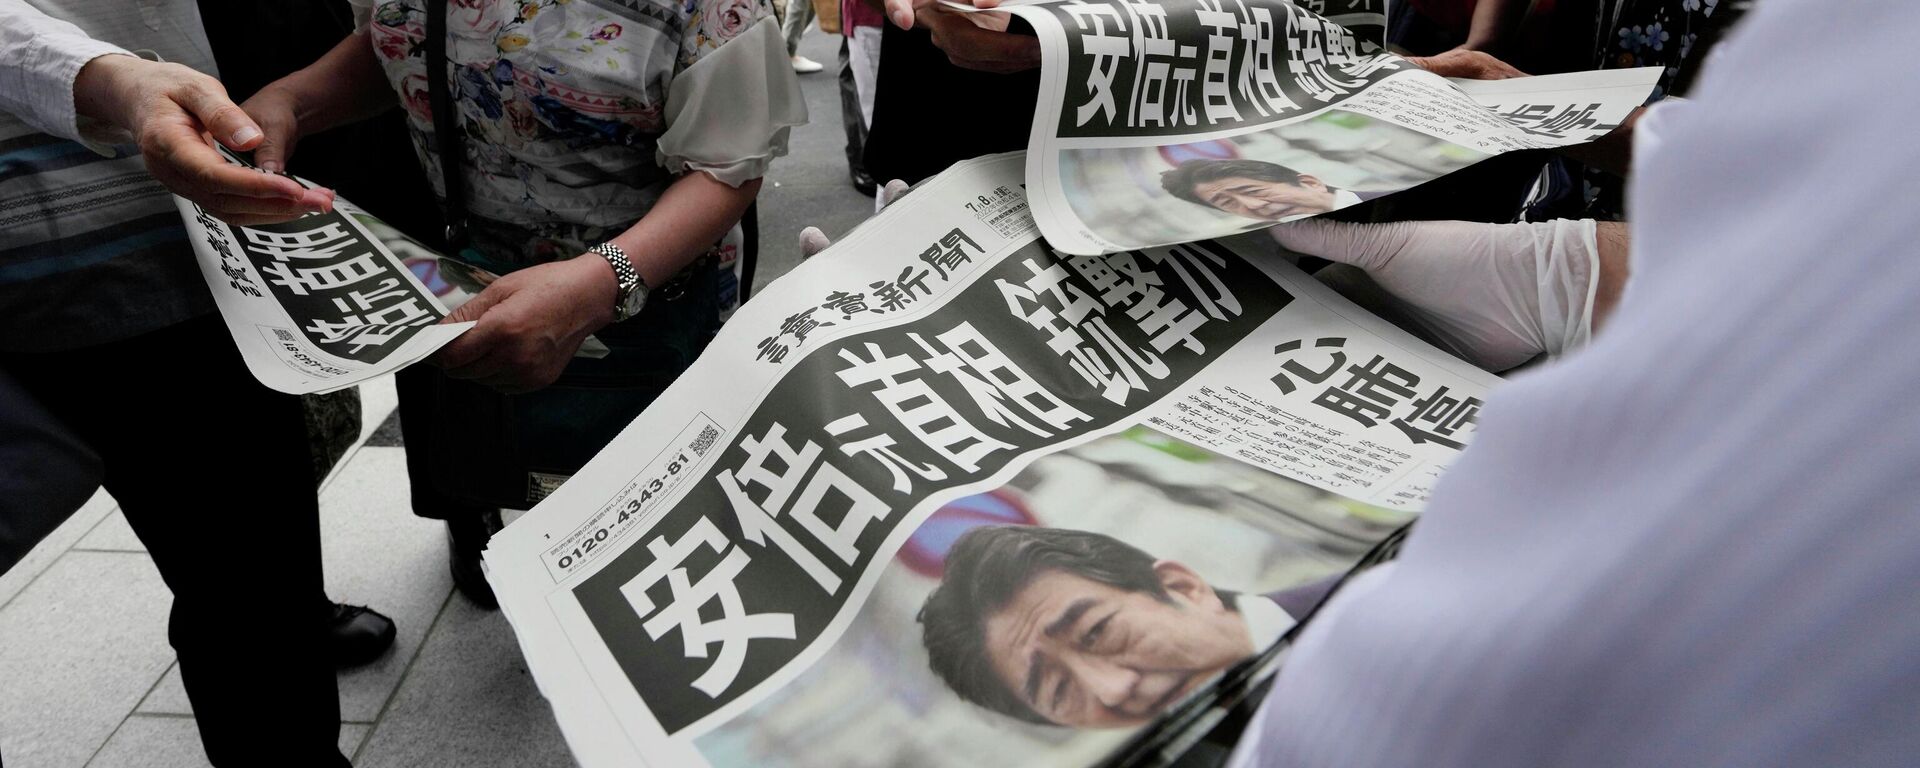 Сотрудник распространяет дополнительные выпуски газеты Yomiuri Shimbun с сообщением покушении на премьер-министра Японии Синдзо Абэ 8 июля 2022 года, Токио - Sputnik Грузия, 1920, 10.07.2022